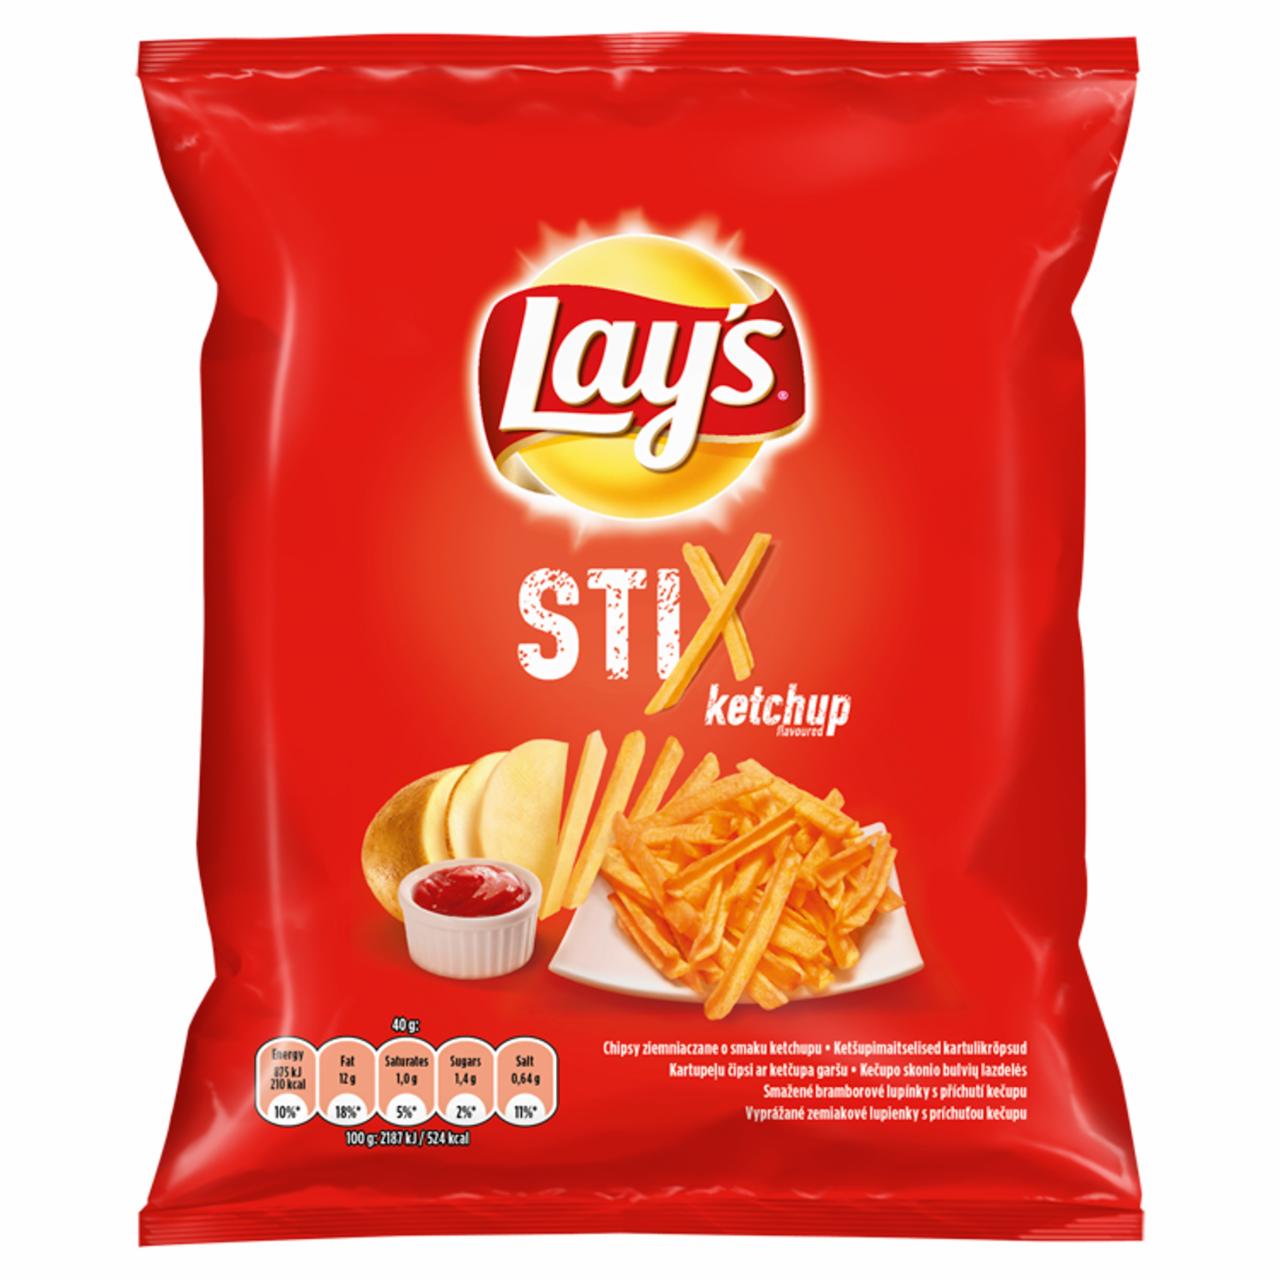 Zdjęcia - Stix Chipsy ziemniaczane o smaku ketchupu Lay's